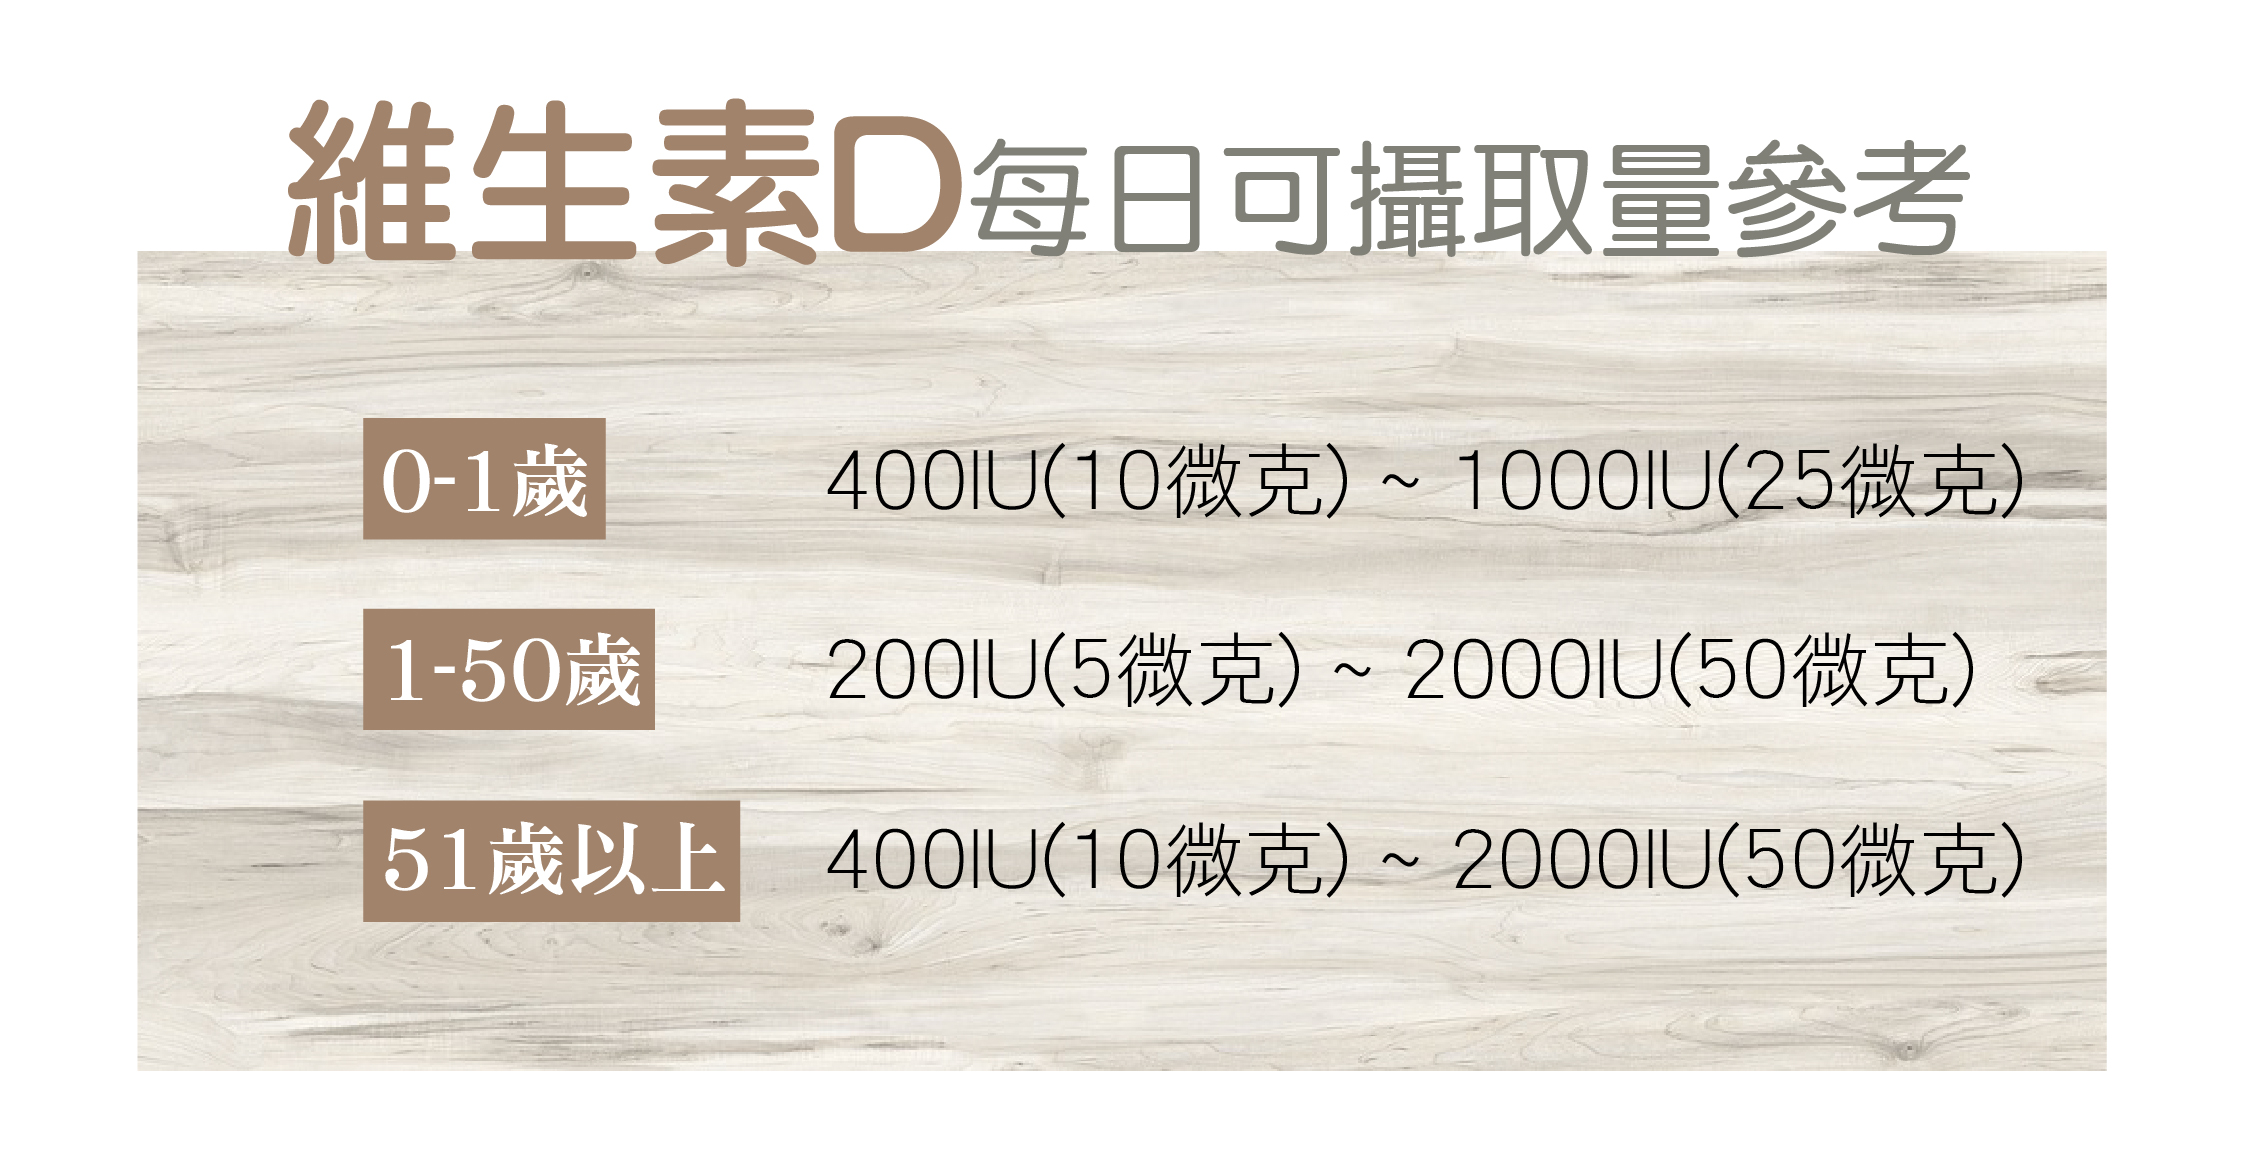 【菁禾GENHAO】非活性維生素D3 800IU錠 71g (100粒/盒)